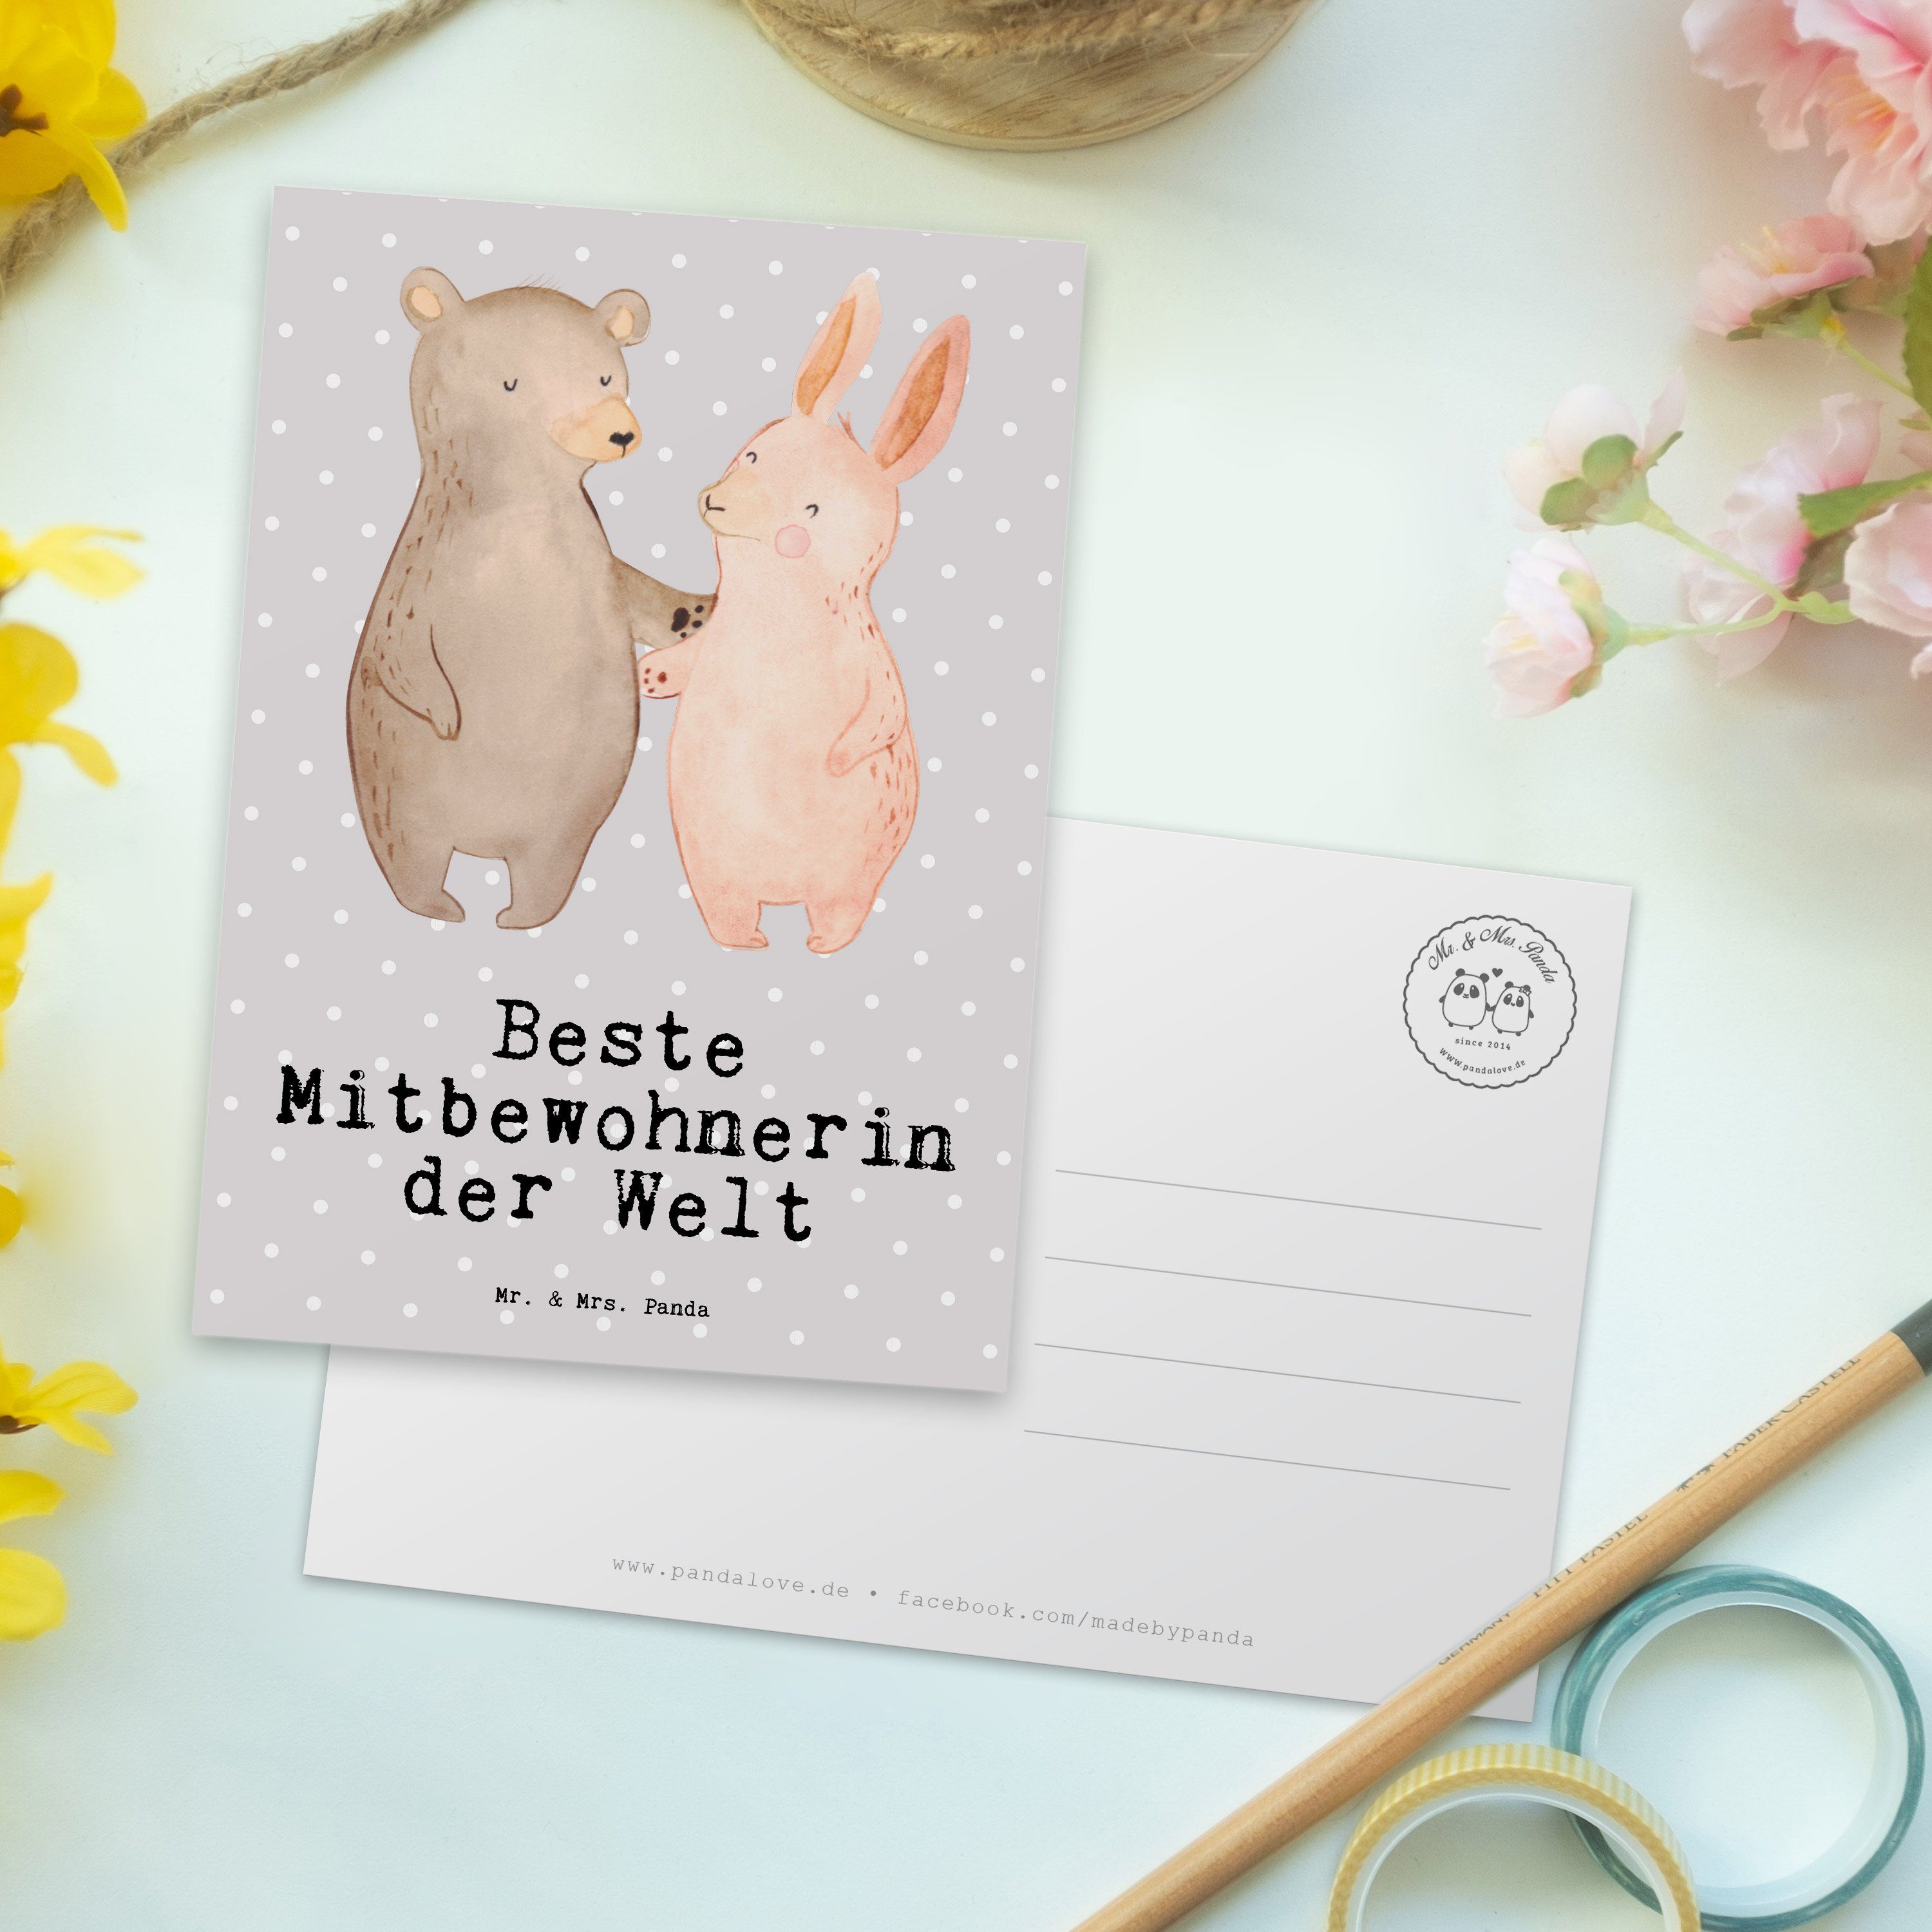 Mr. & Mrs. Pastell Panda Grau Welt Grußkart Geschenk, - Mitbewohnerin der Beste Hase - Postkarte